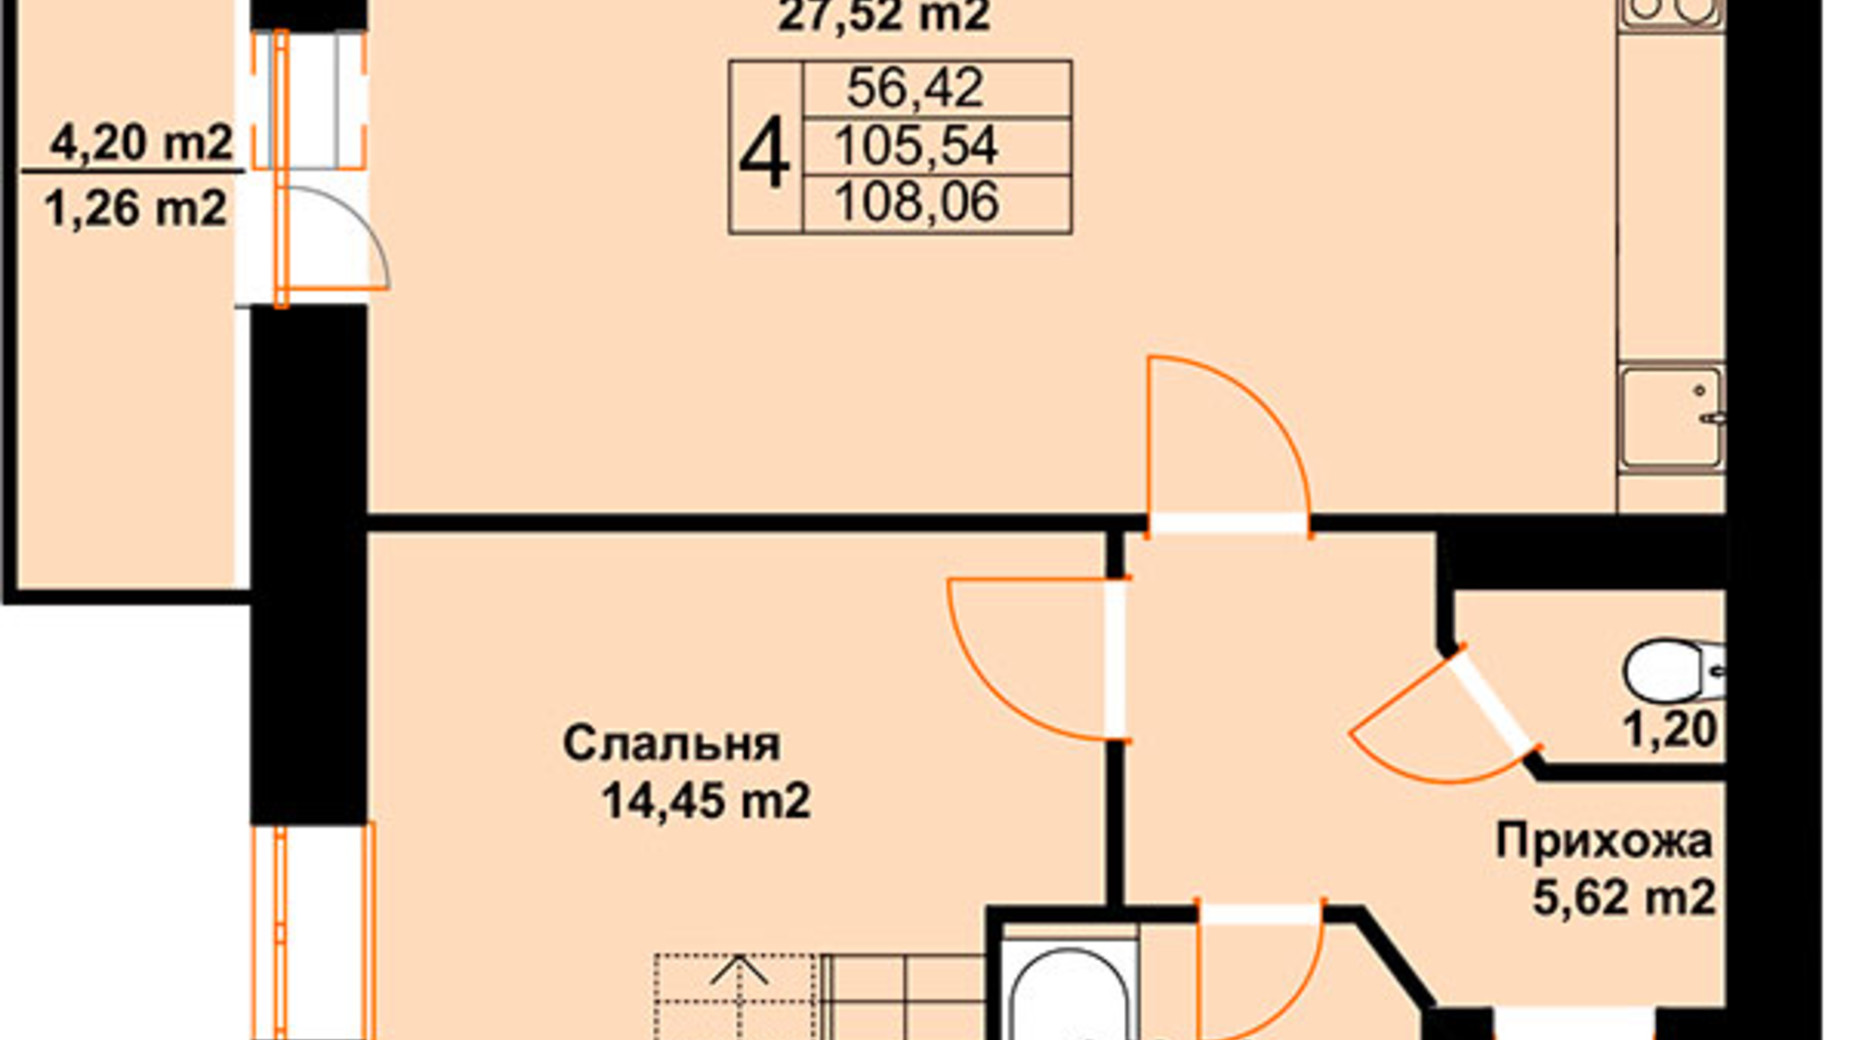 Планировка много­уровневой квартиры в ЖК Бавария 108.06 м², фото 609604